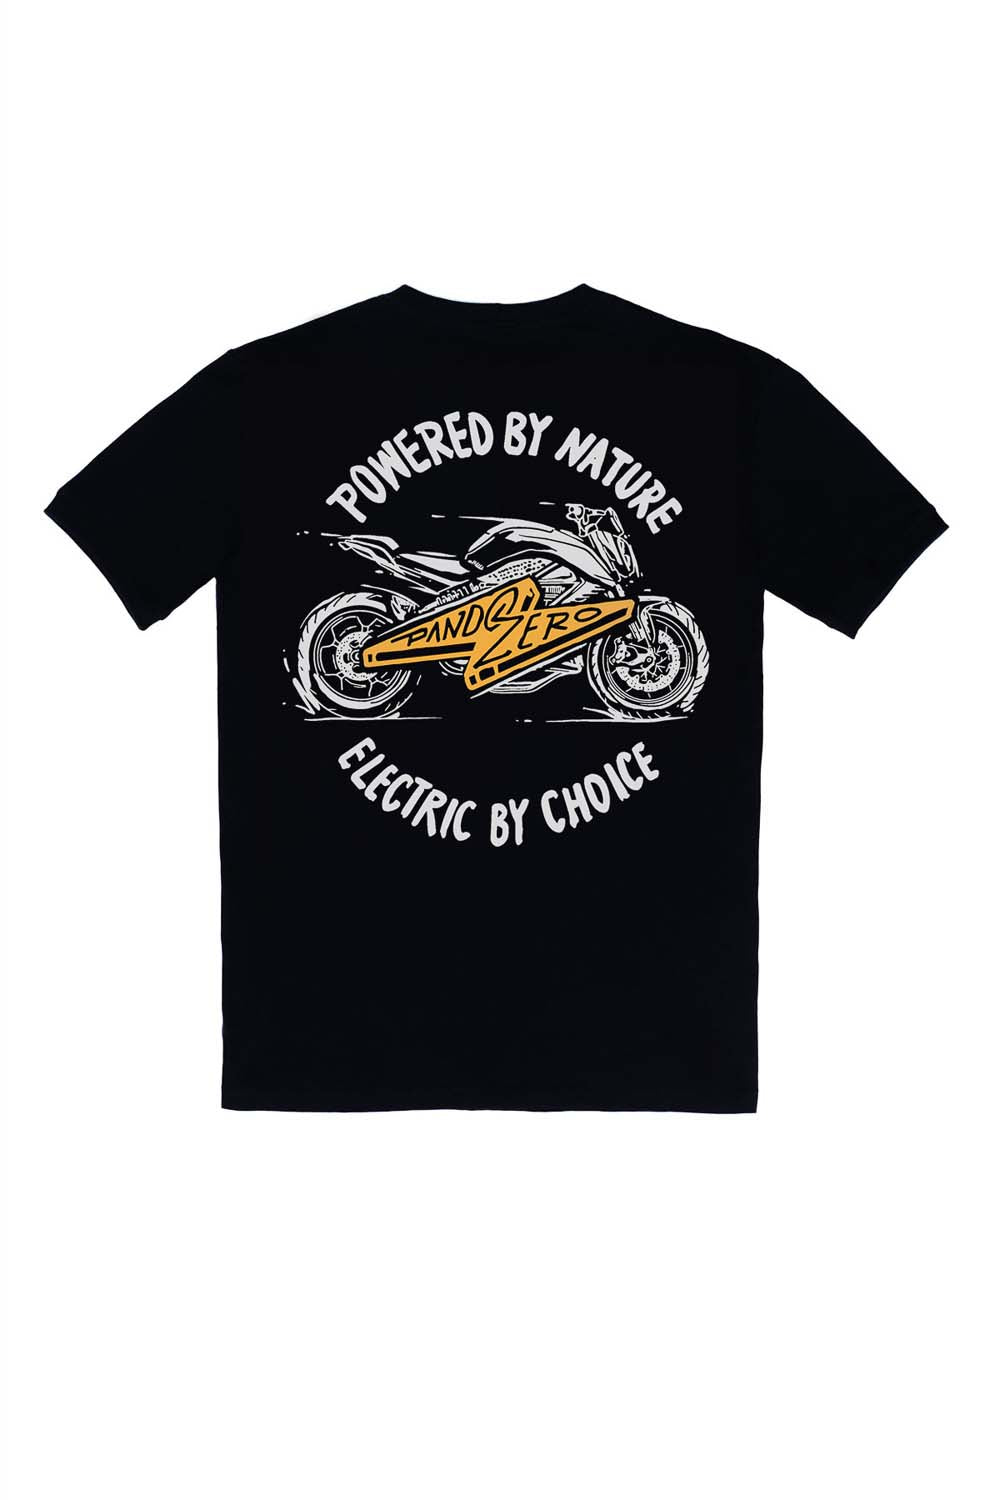 Pando Moto MIKE ZERO 1 T-Shirt